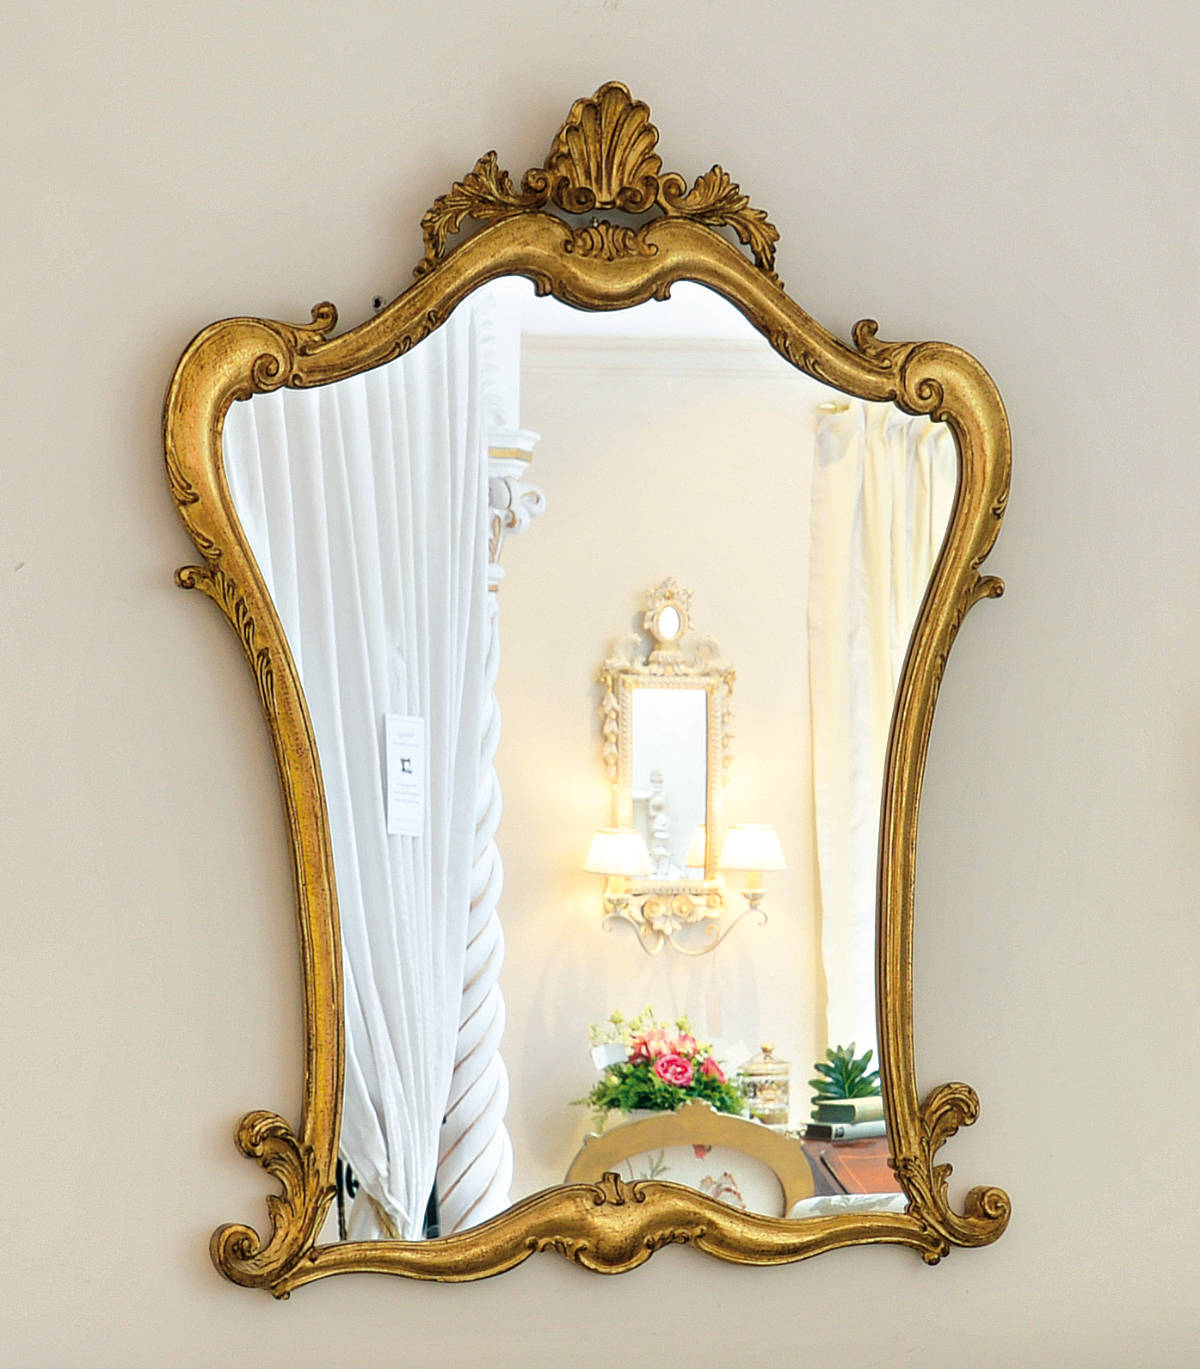 Großer Spiegel mit Goldrand, geschwungene Form, florale Elemente, Frontalansicht.